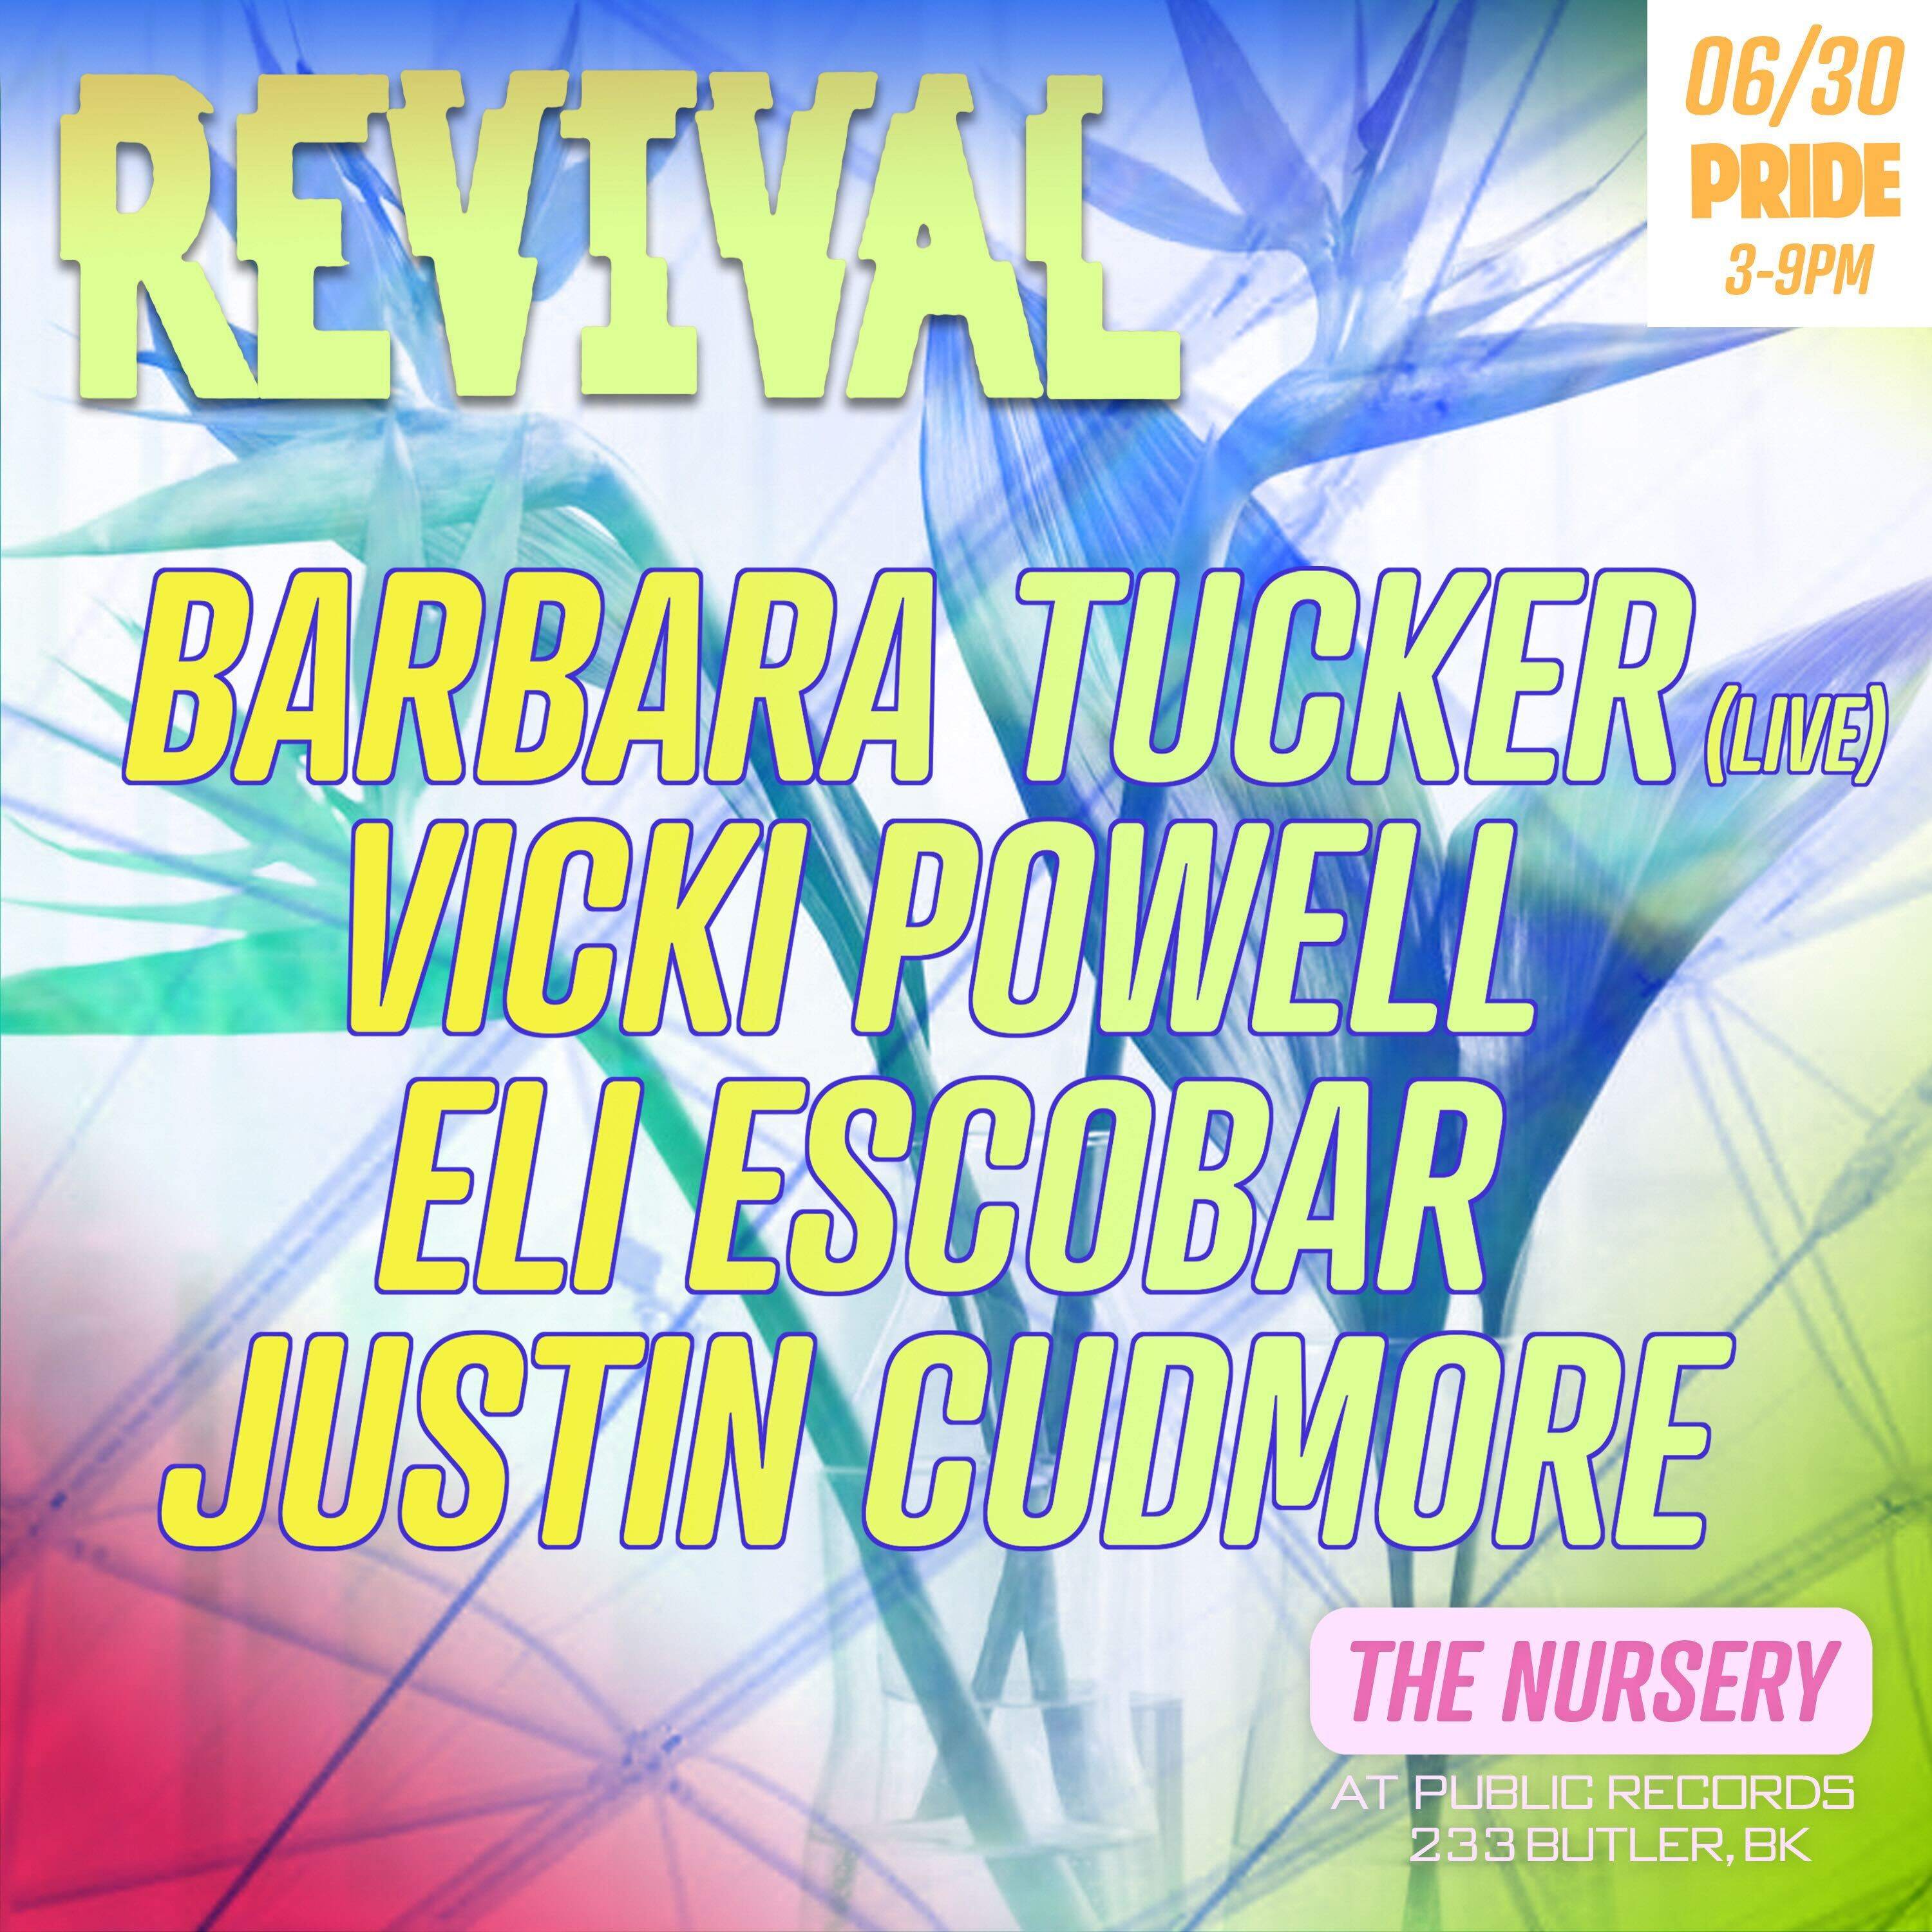 Revival PRIDE: Barbara Tucker (Live) + Vicki Powell + Eli Escobar + Justin Cudmore - Página frontal